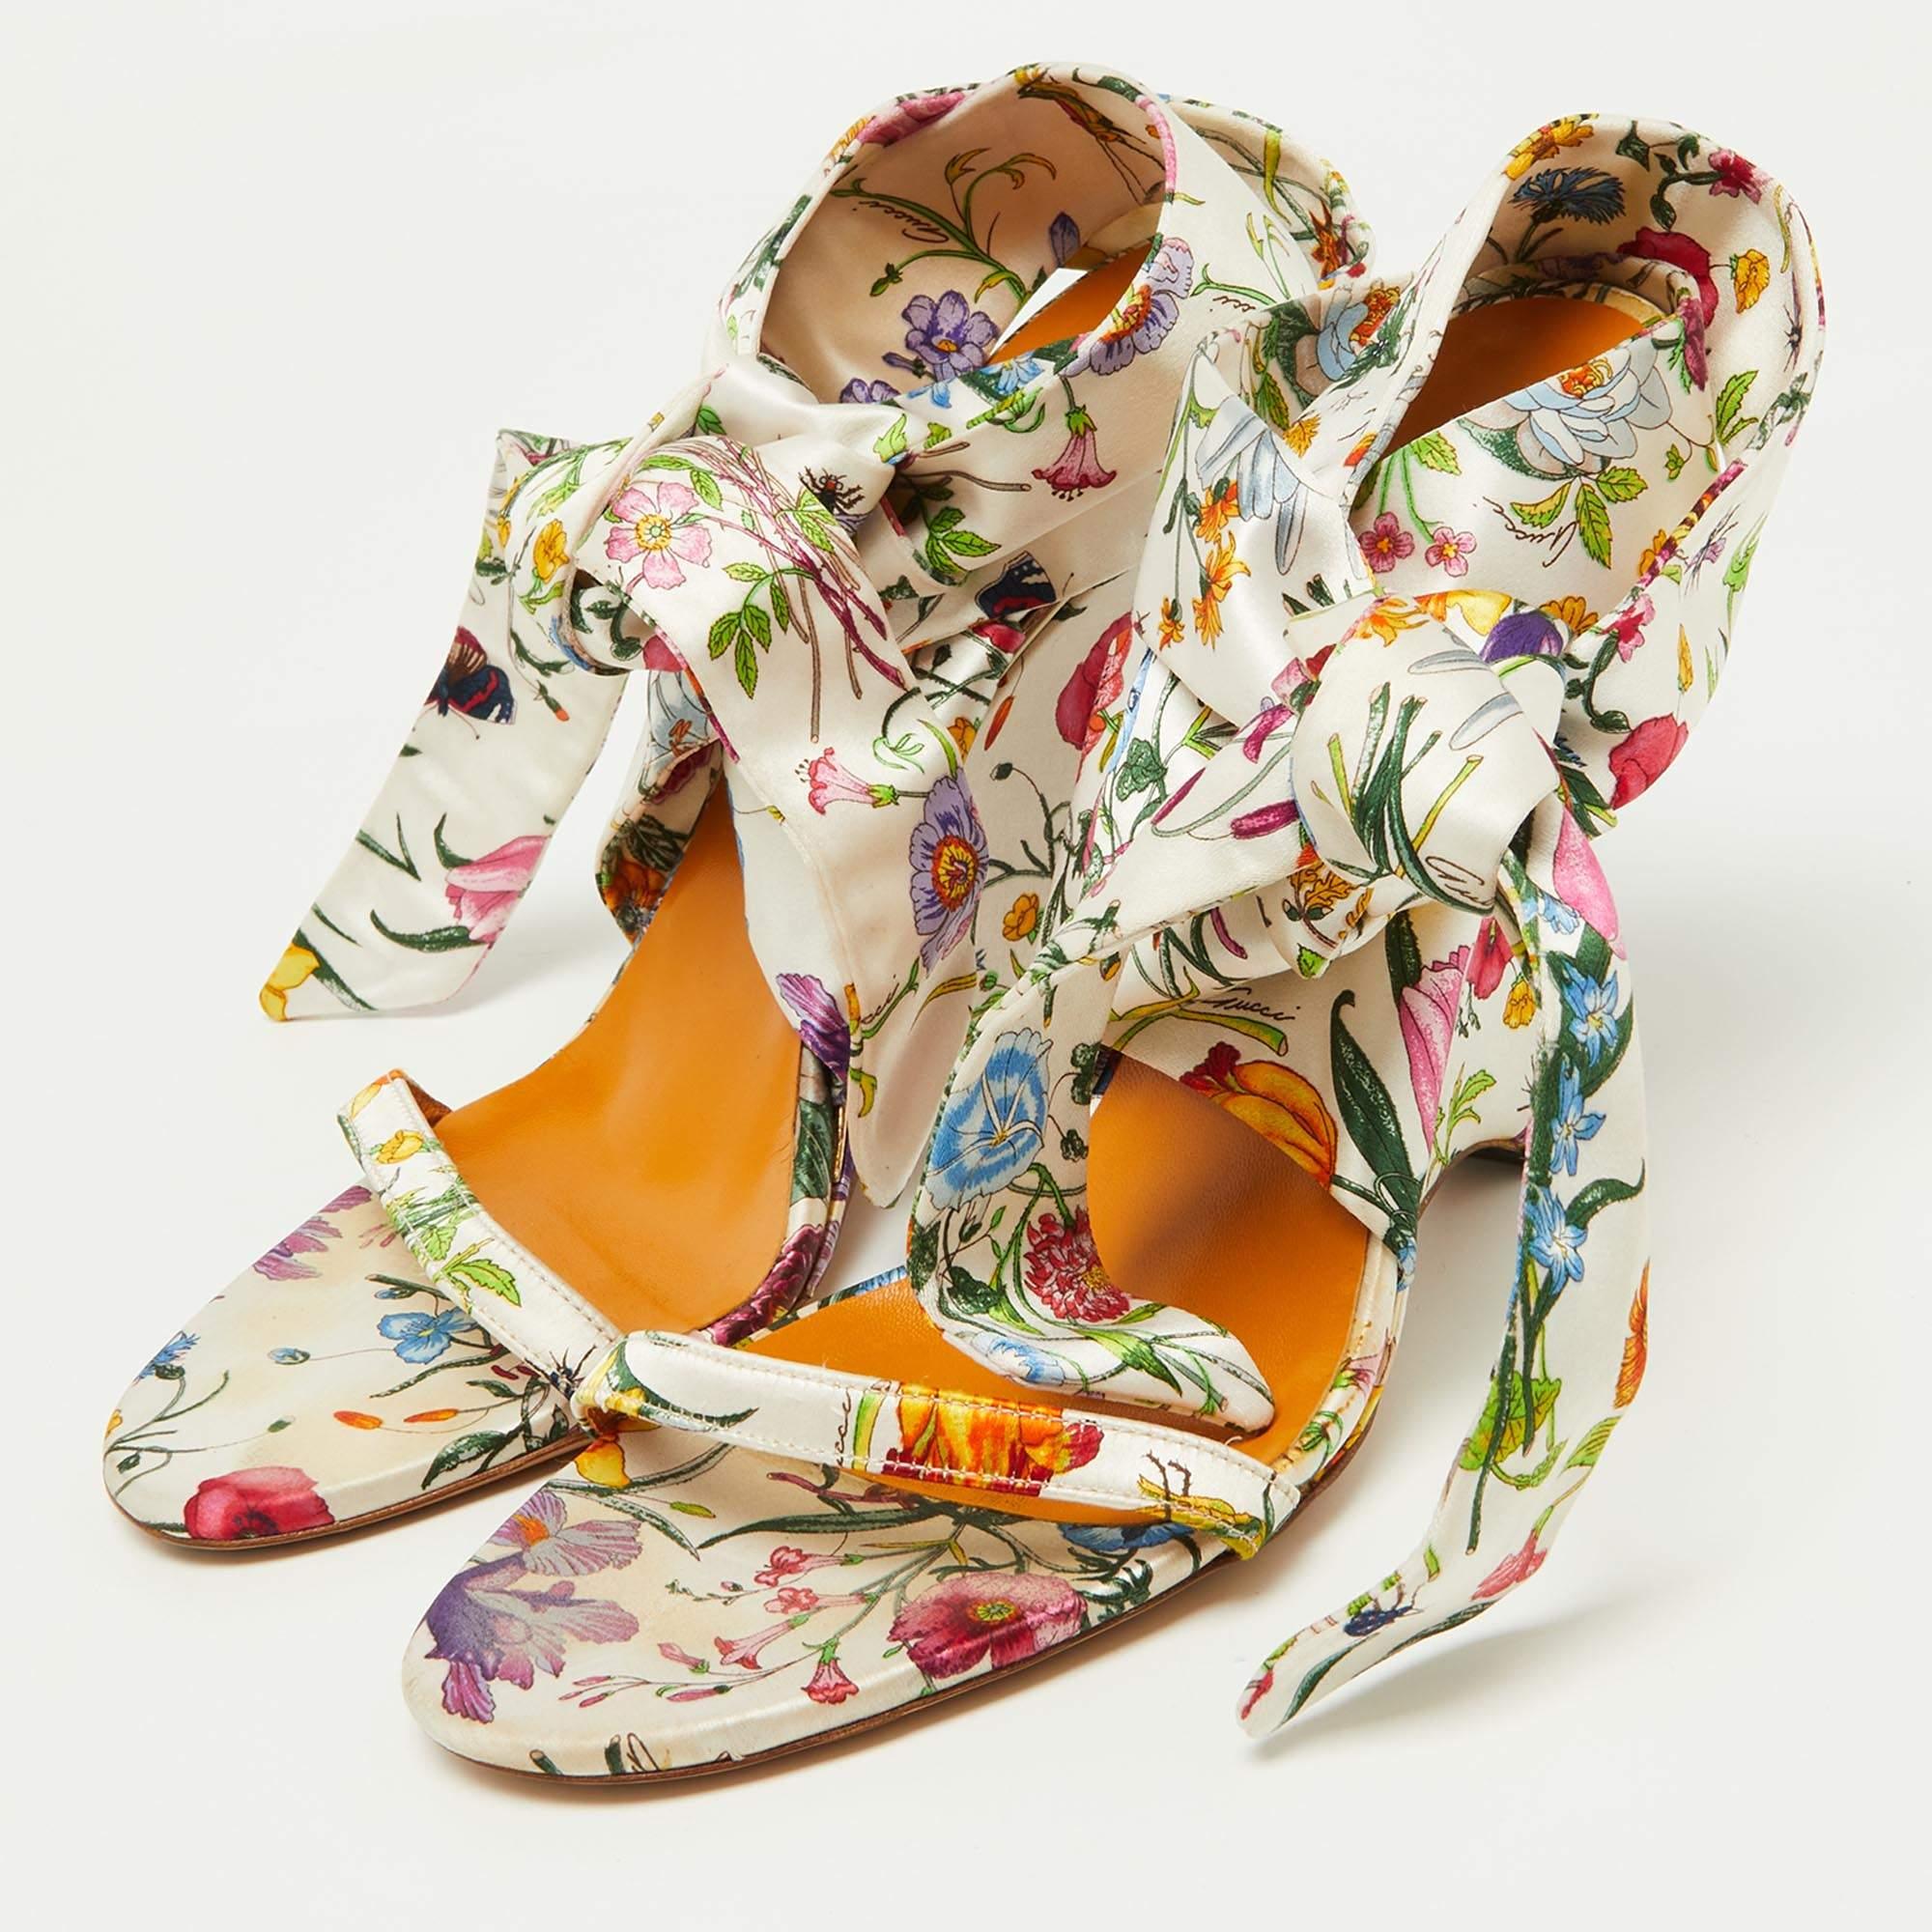 Die Sandalen von Gucci sind ein perfektes Paar, mit dem Sie Ihre hübschen Sommerkleider stylen können. Sie sind aus Satin mit Blumendruck gefertigt, haben einen Knöchelriemen zum Binden und einen Keilabsatz, den man den ganzen Tag lang tragen kann.

